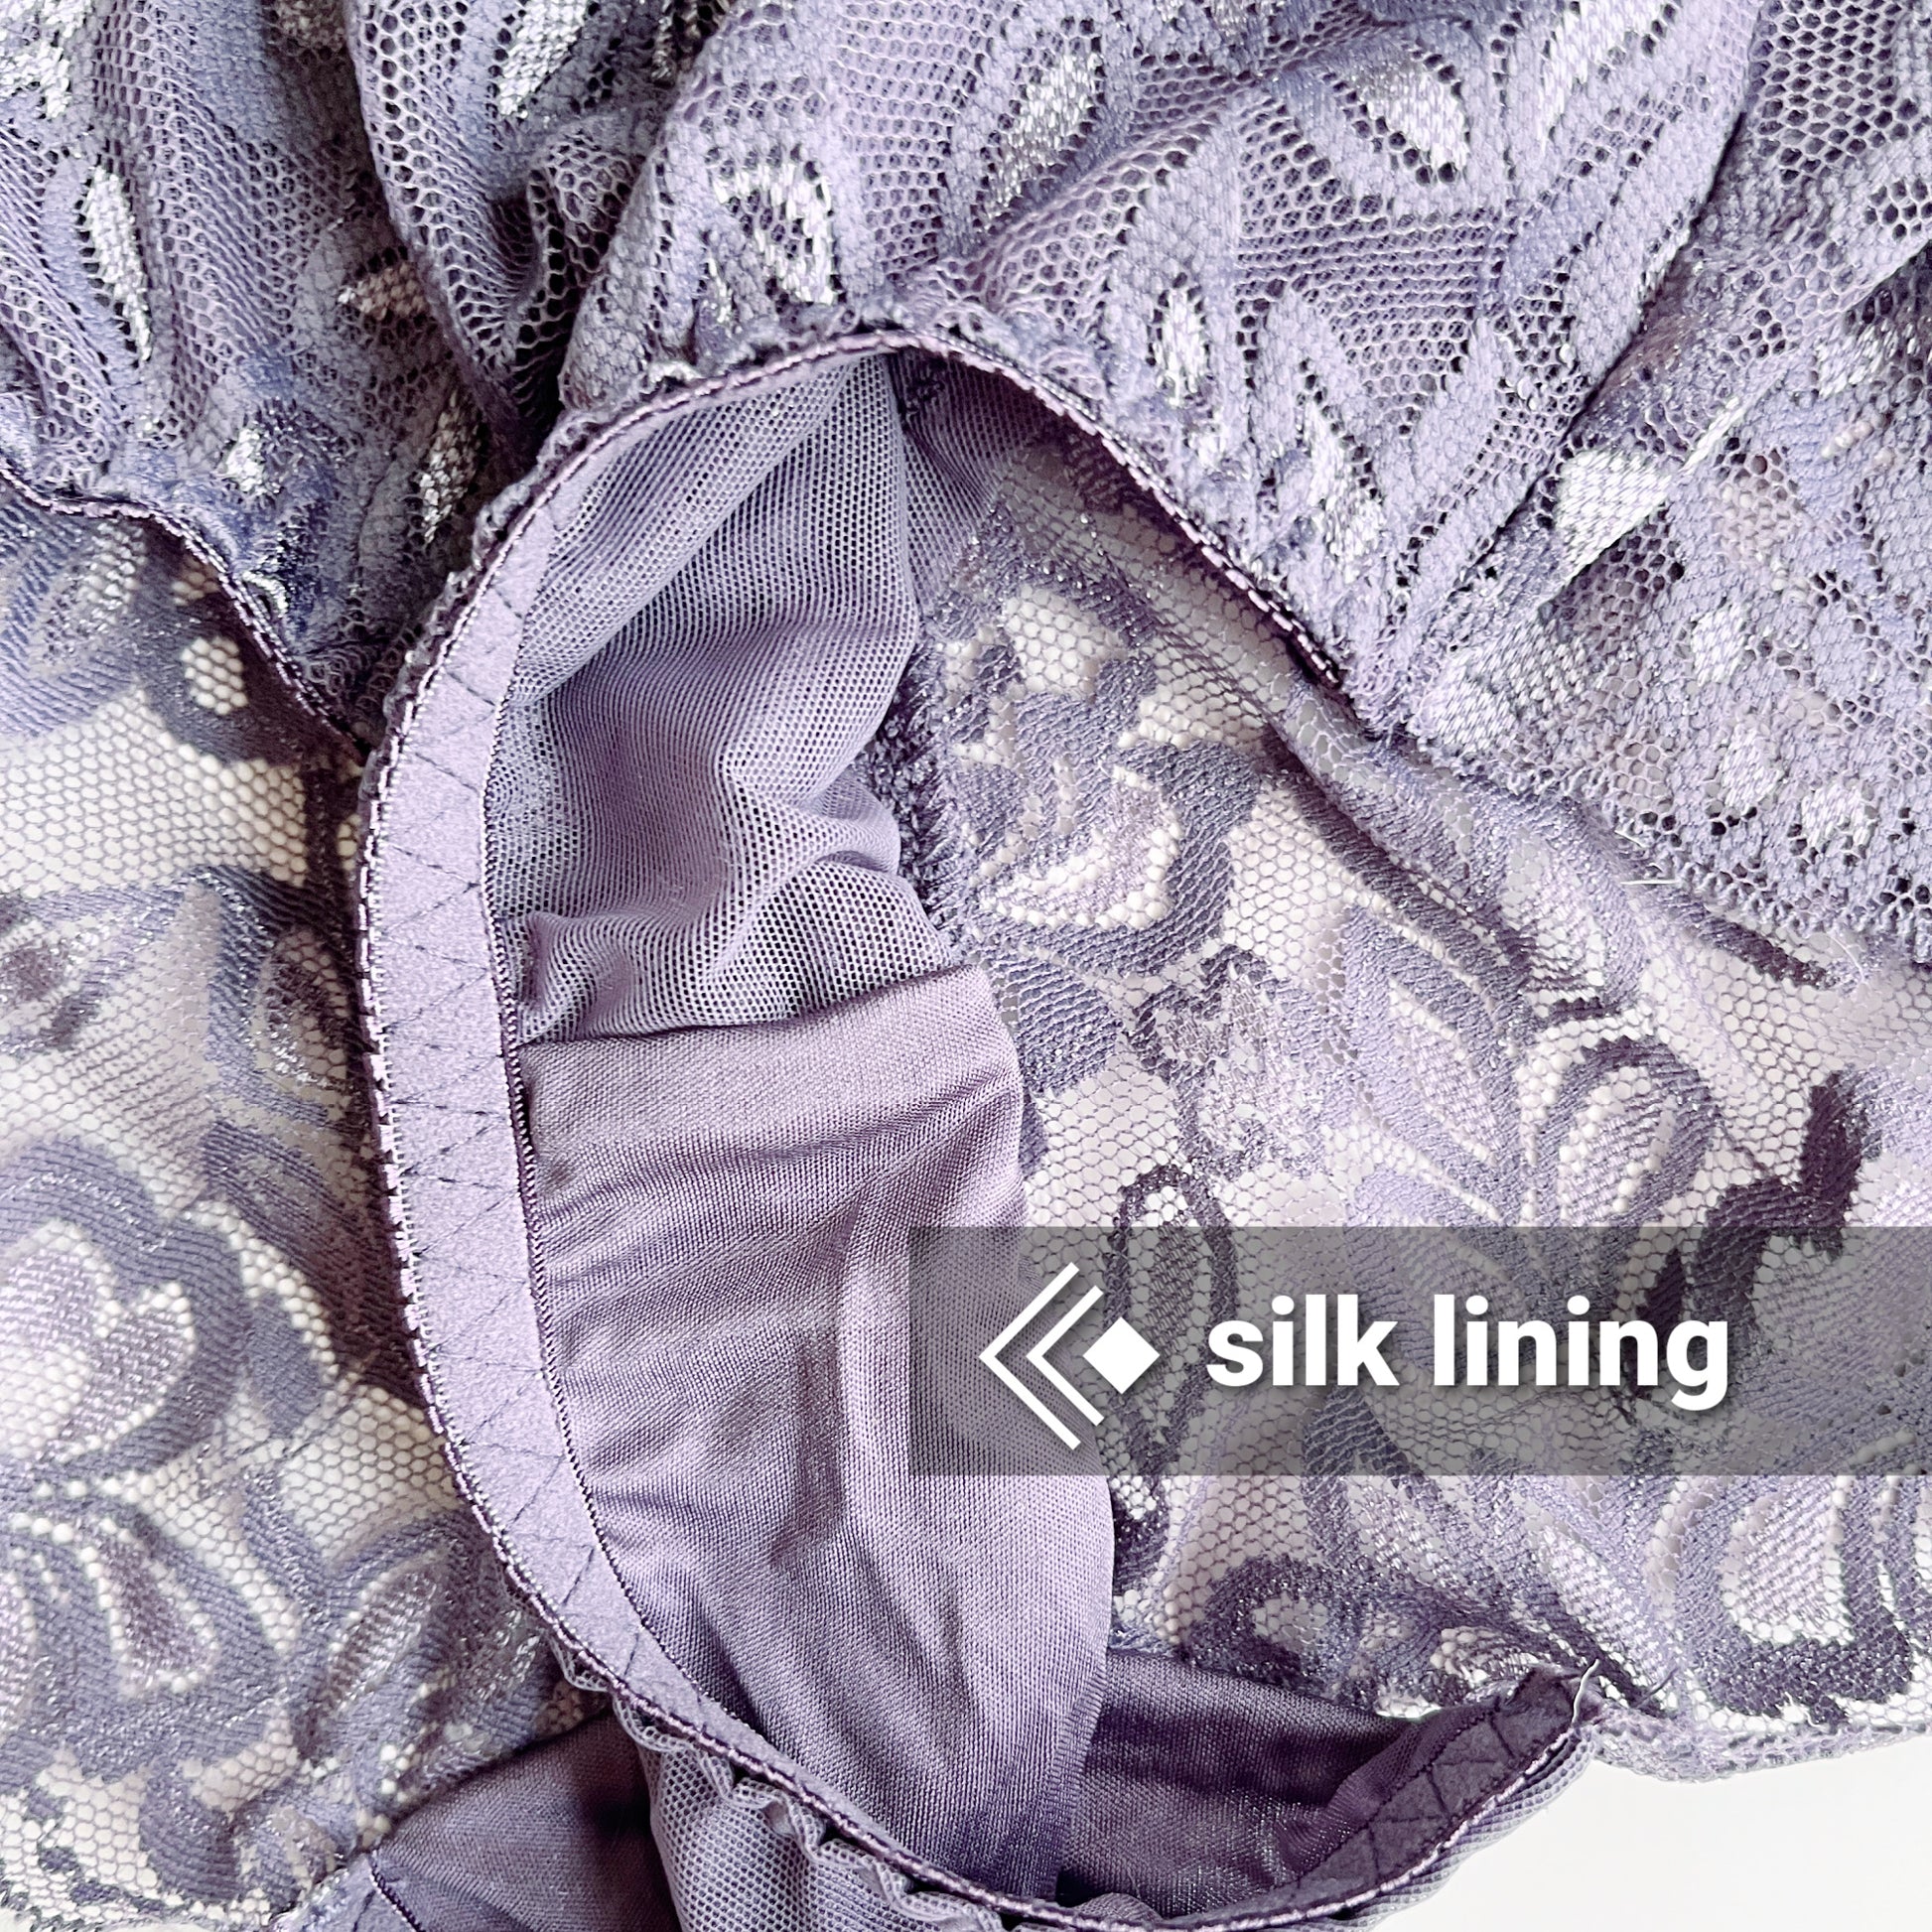 Silk lace underwear brief for women